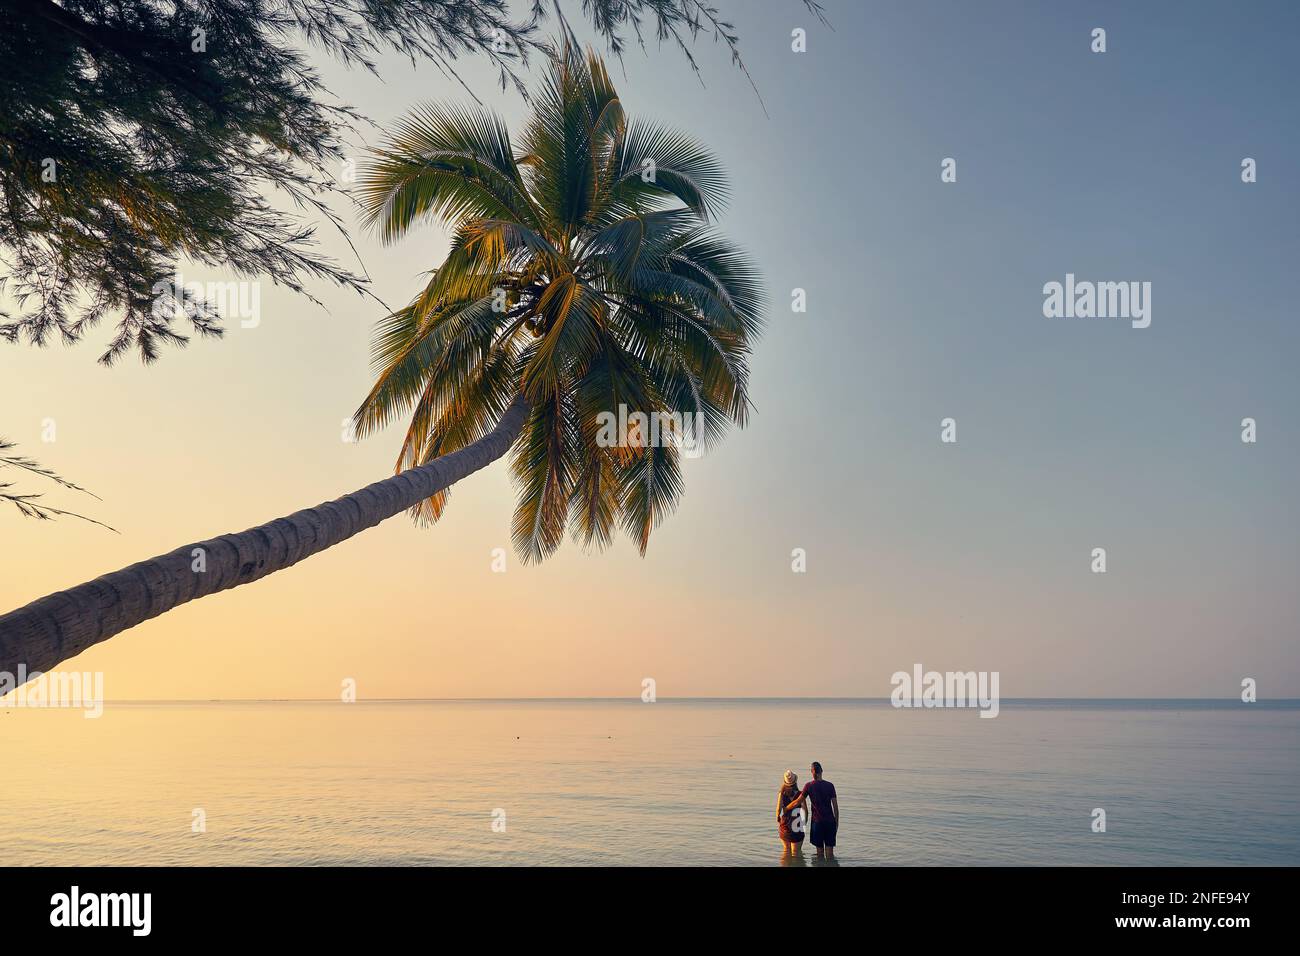 Glückliches Paar im Wasser am tropischen Strand in der Nähe von Palmen der Phi Phi Insel im Süden Thailands. Reisemagazin Urlaubskonzept. Stockfoto